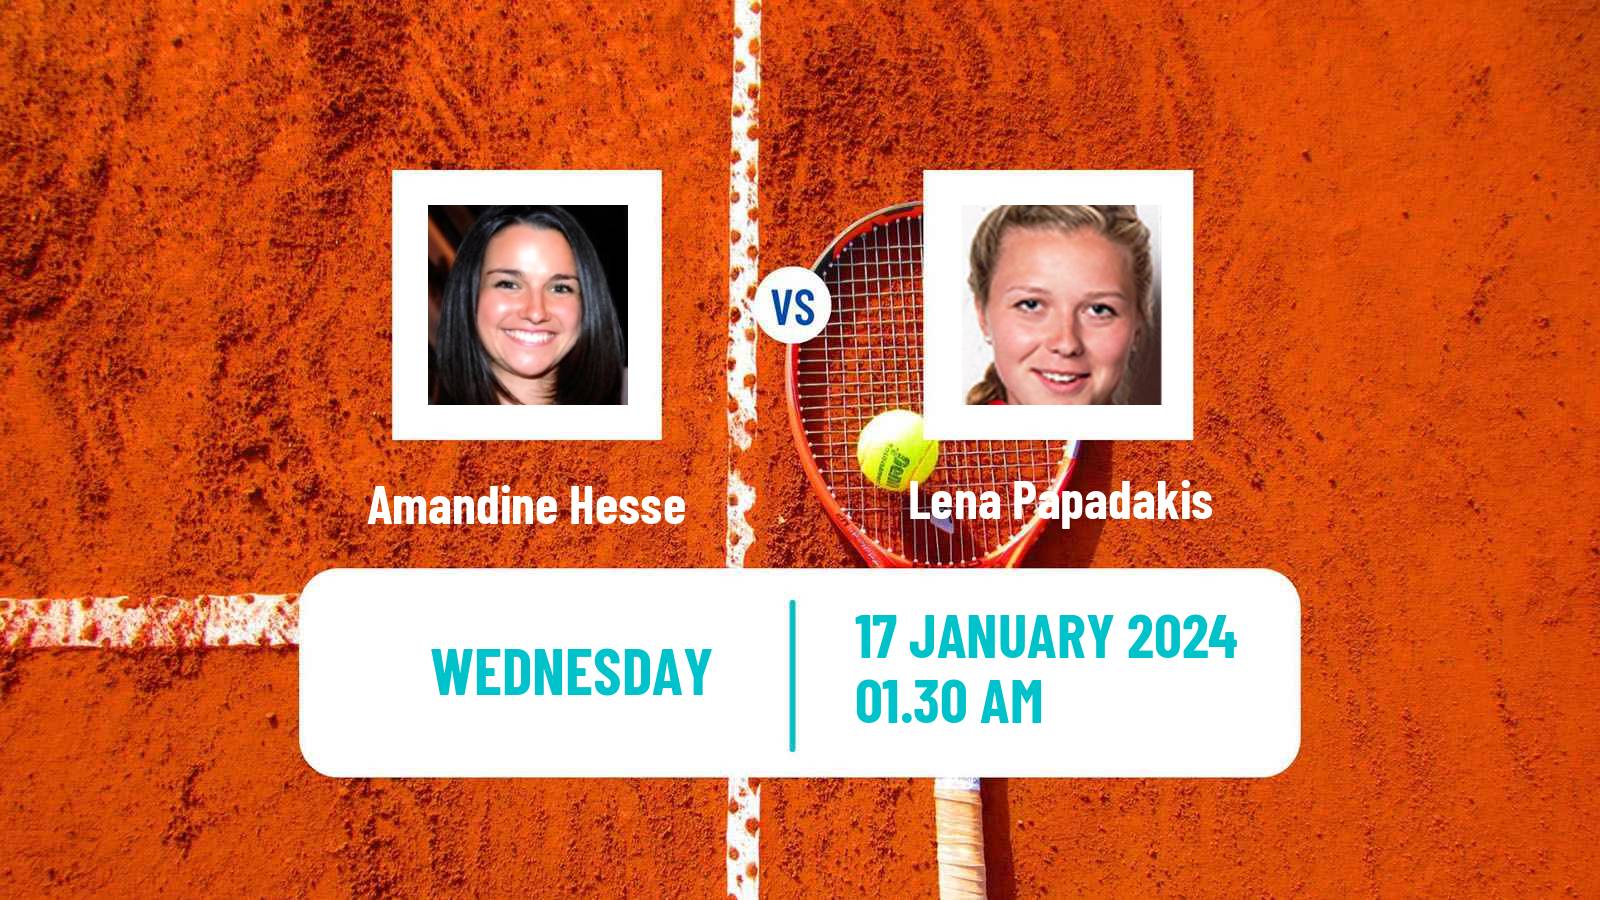 Tennis ITF W50 Bengaluru Women Amandine Hesse - Lena Papadakis